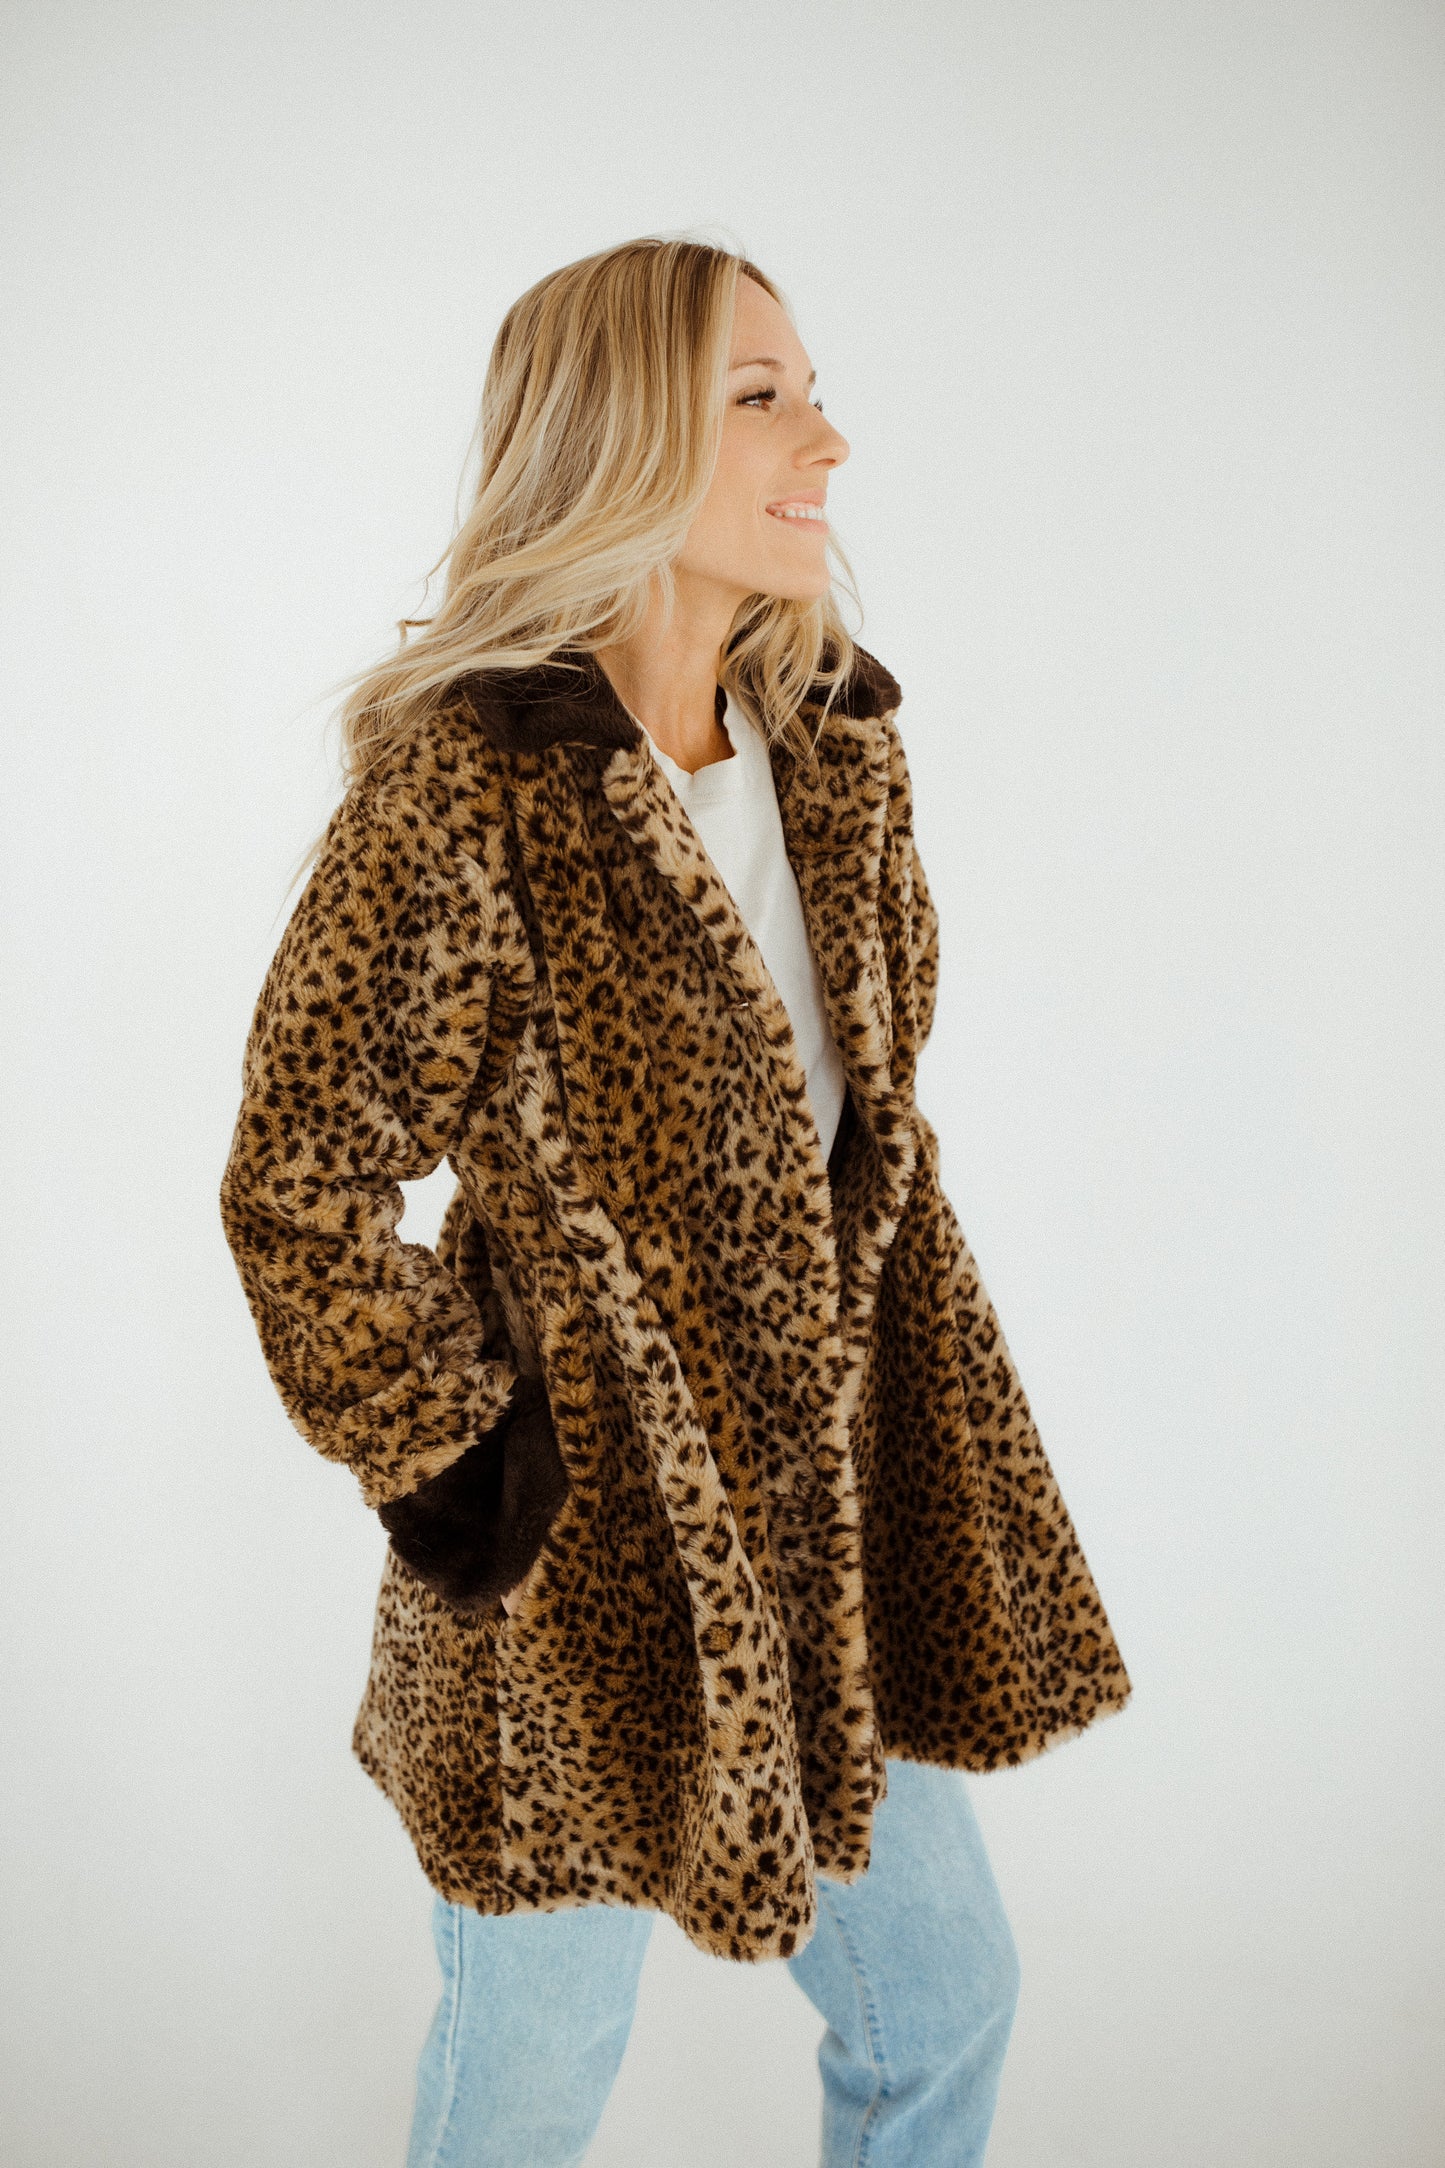 The Cheetah Coat